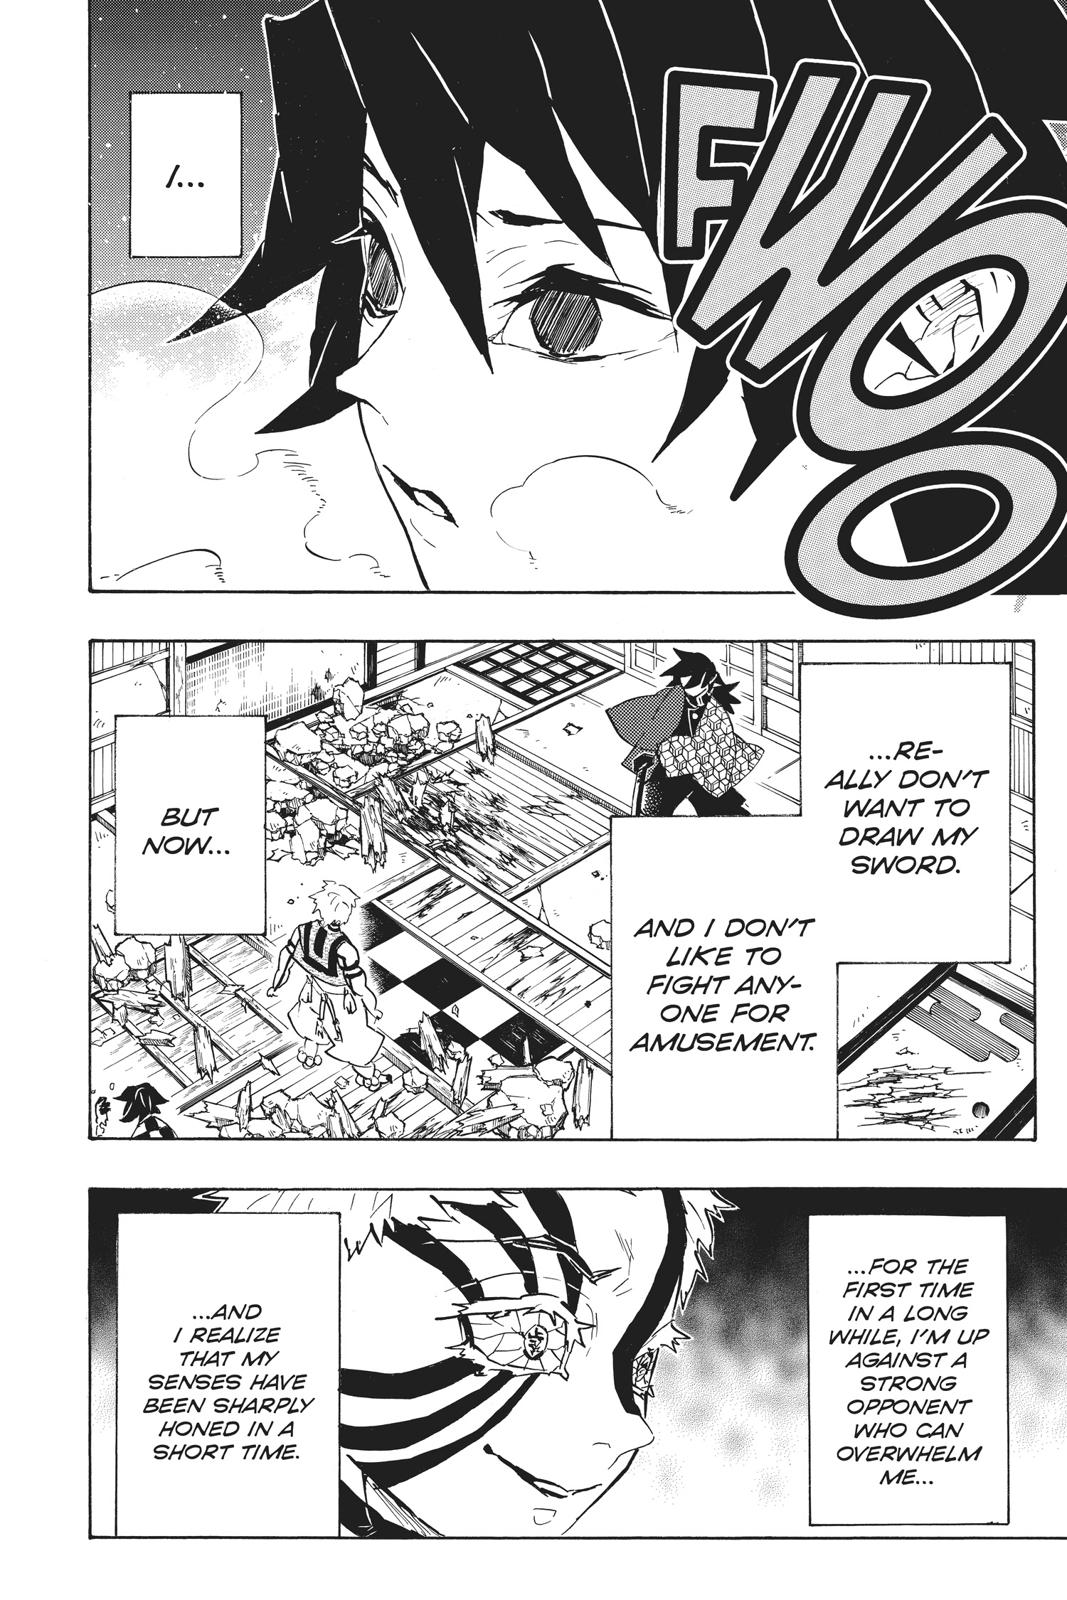 Demon Slayer Manga Manga Chapter - 150 - image 1